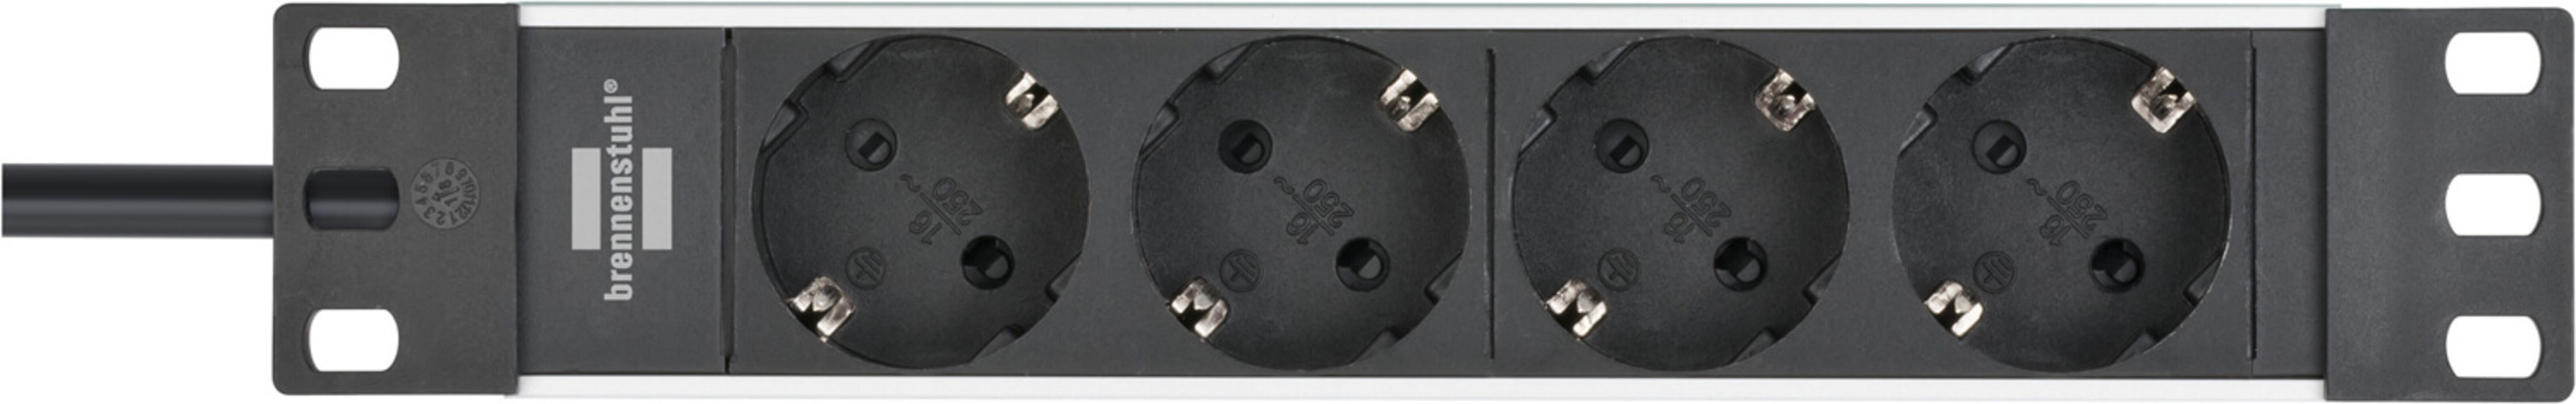 Hochwertige Brennenstuhl Alu Line 10 Steckdosenleiste für Schaltschränke mit Schalter 4-fach 2m H05VV-F3G1.5 in silber-schwarz